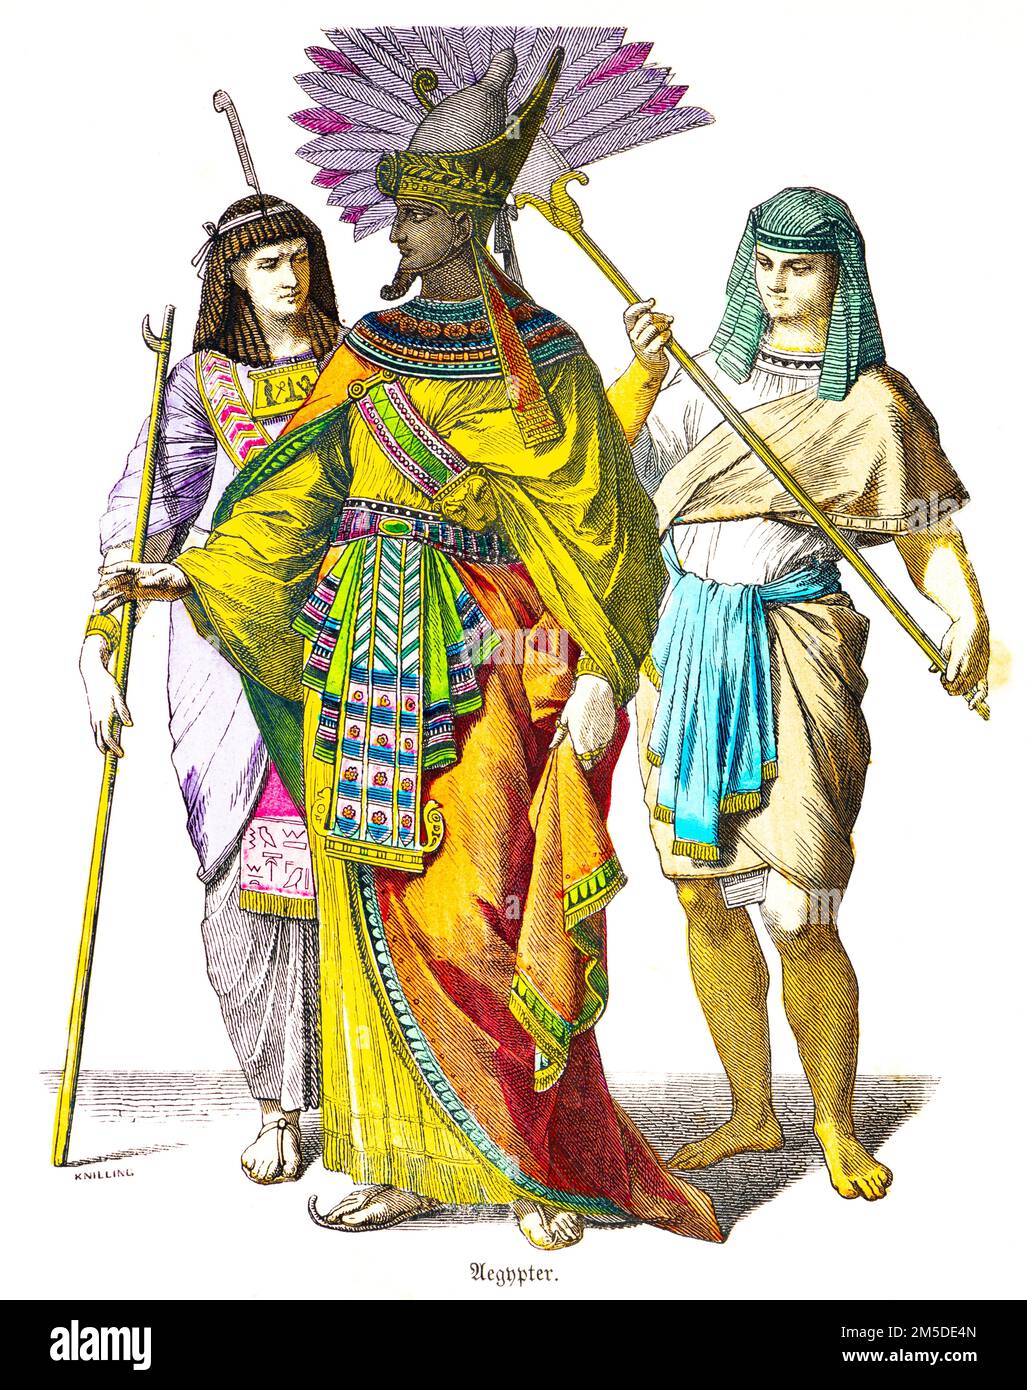 Costumes historiques des Egyptiens, illustration historique colorée, Münchener Bilderbogen, München 1890 Banque D'Images